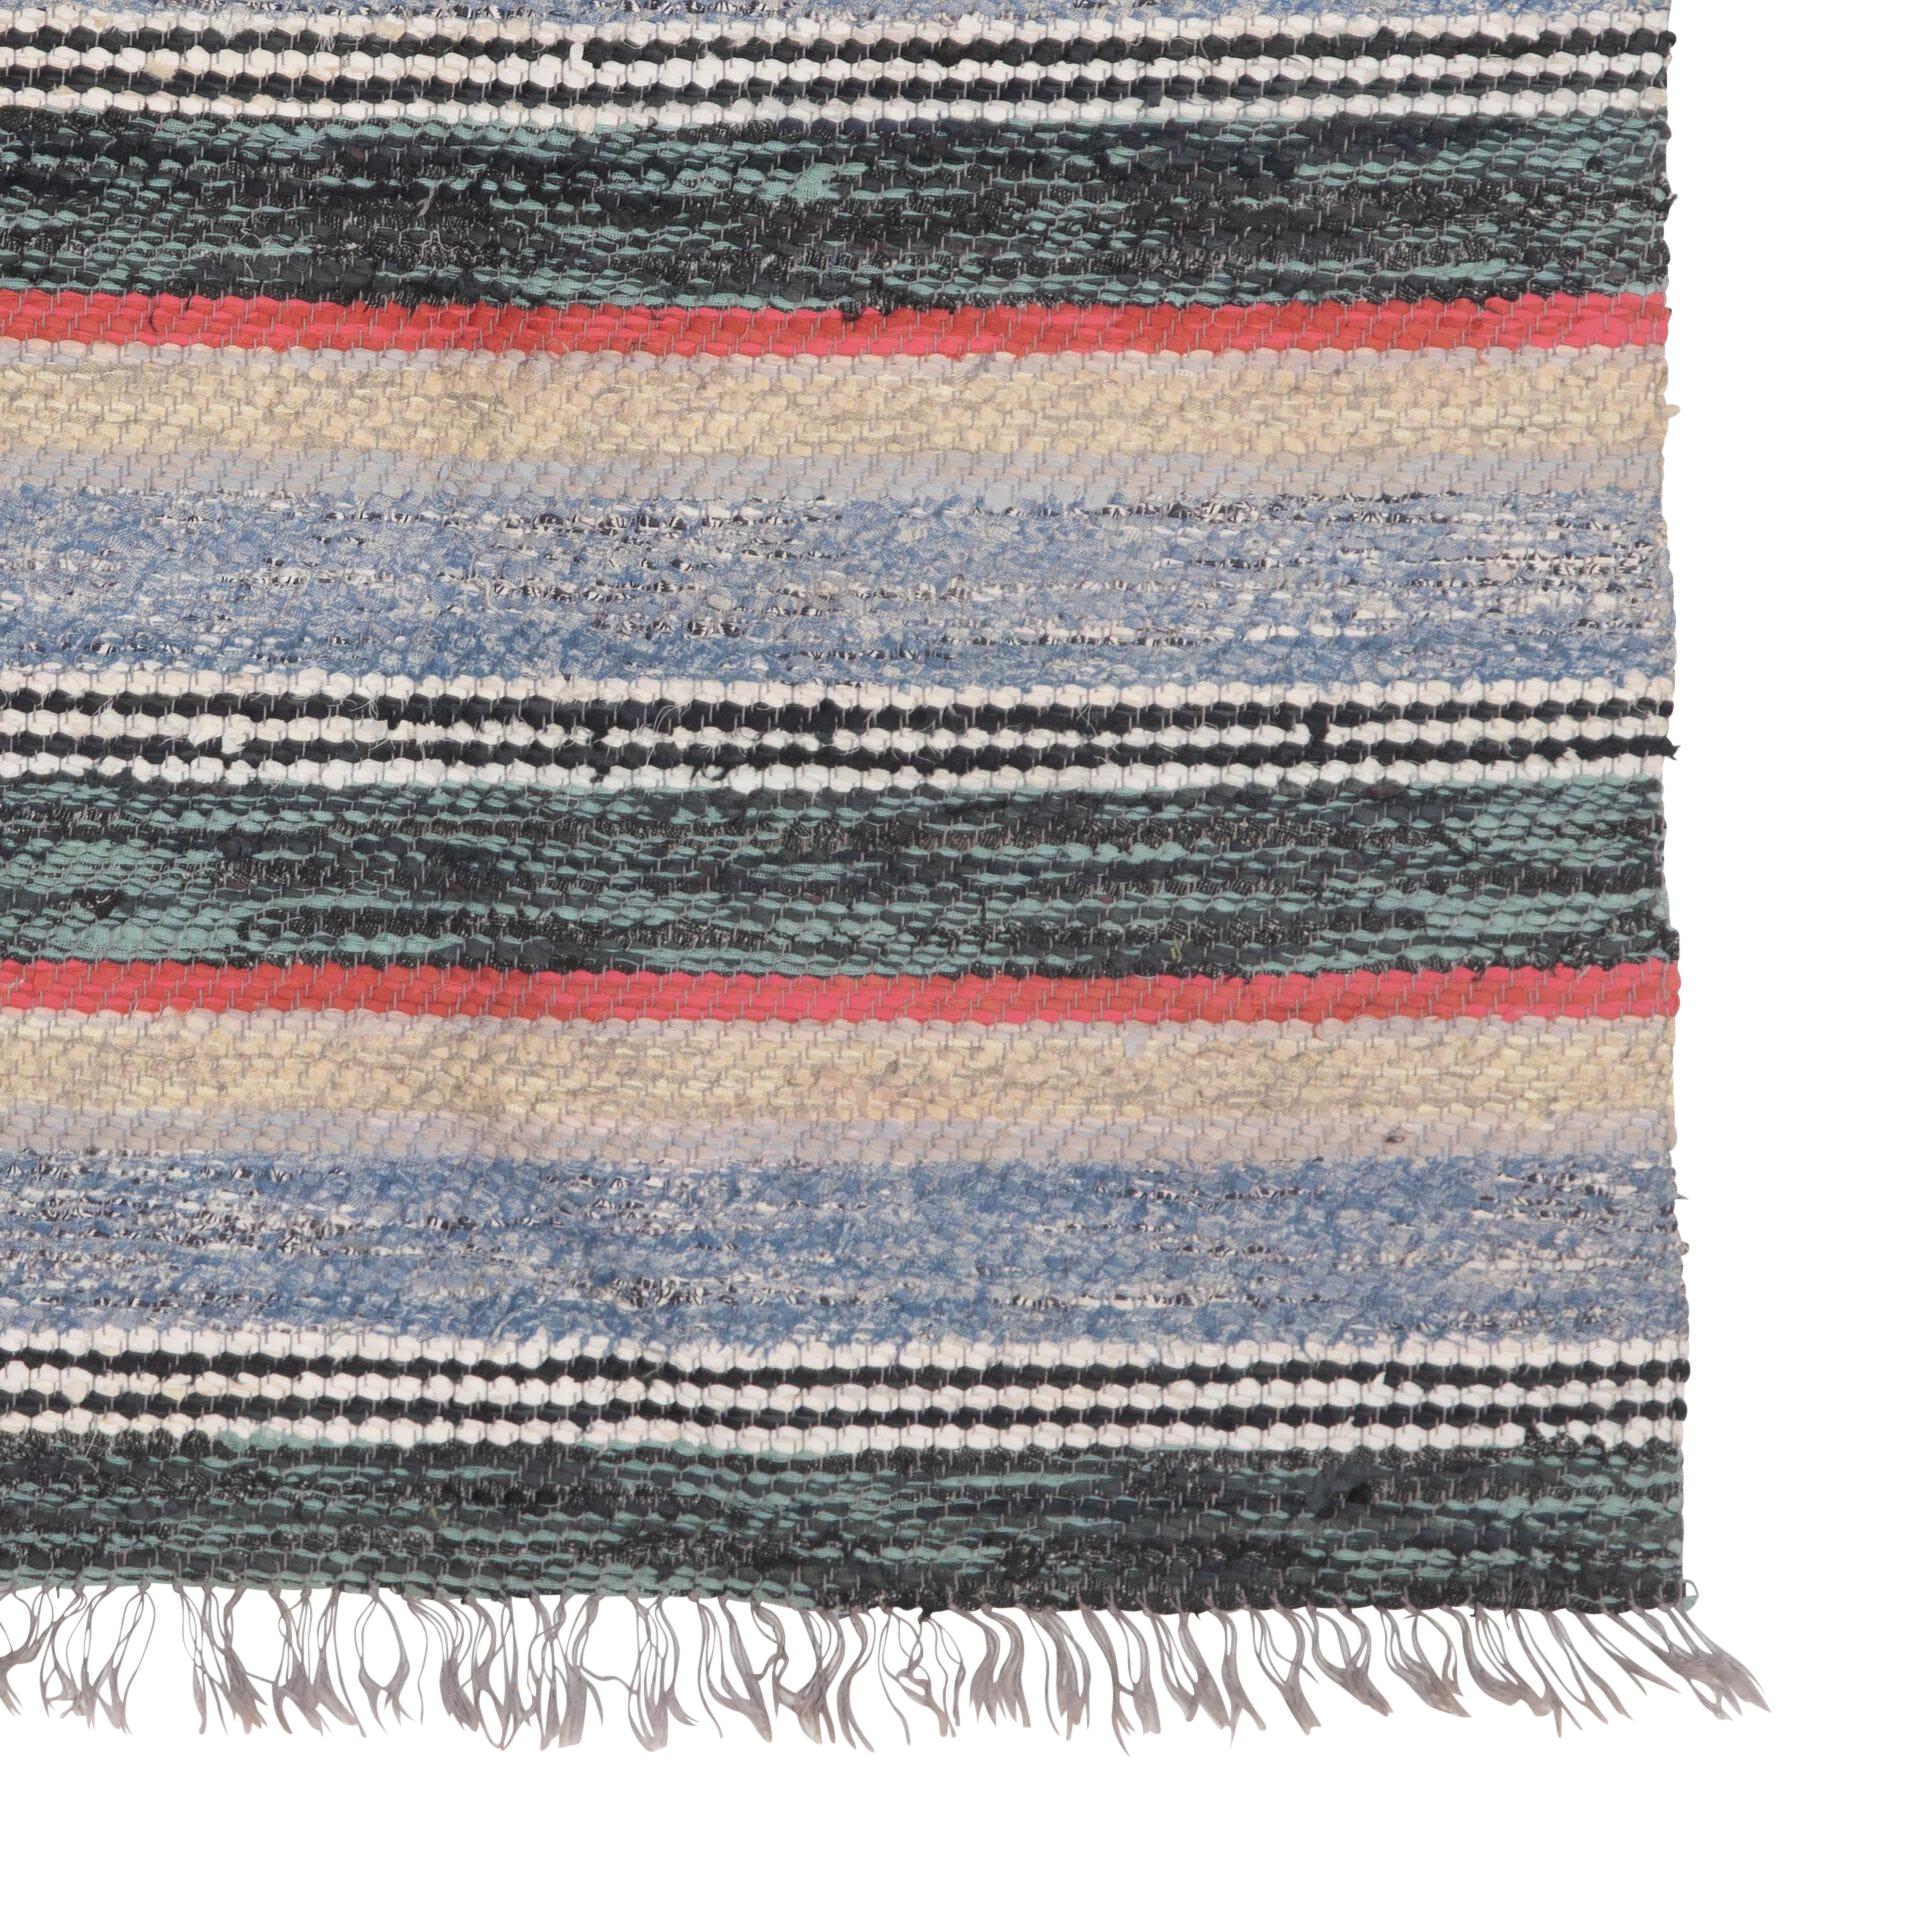 Traditioneller schwedischer Teppich des 20. Jahrhunderts in Grün, Blau und Rosa.
Mit durchgehendem Streifendesign. 
Um 1950. 